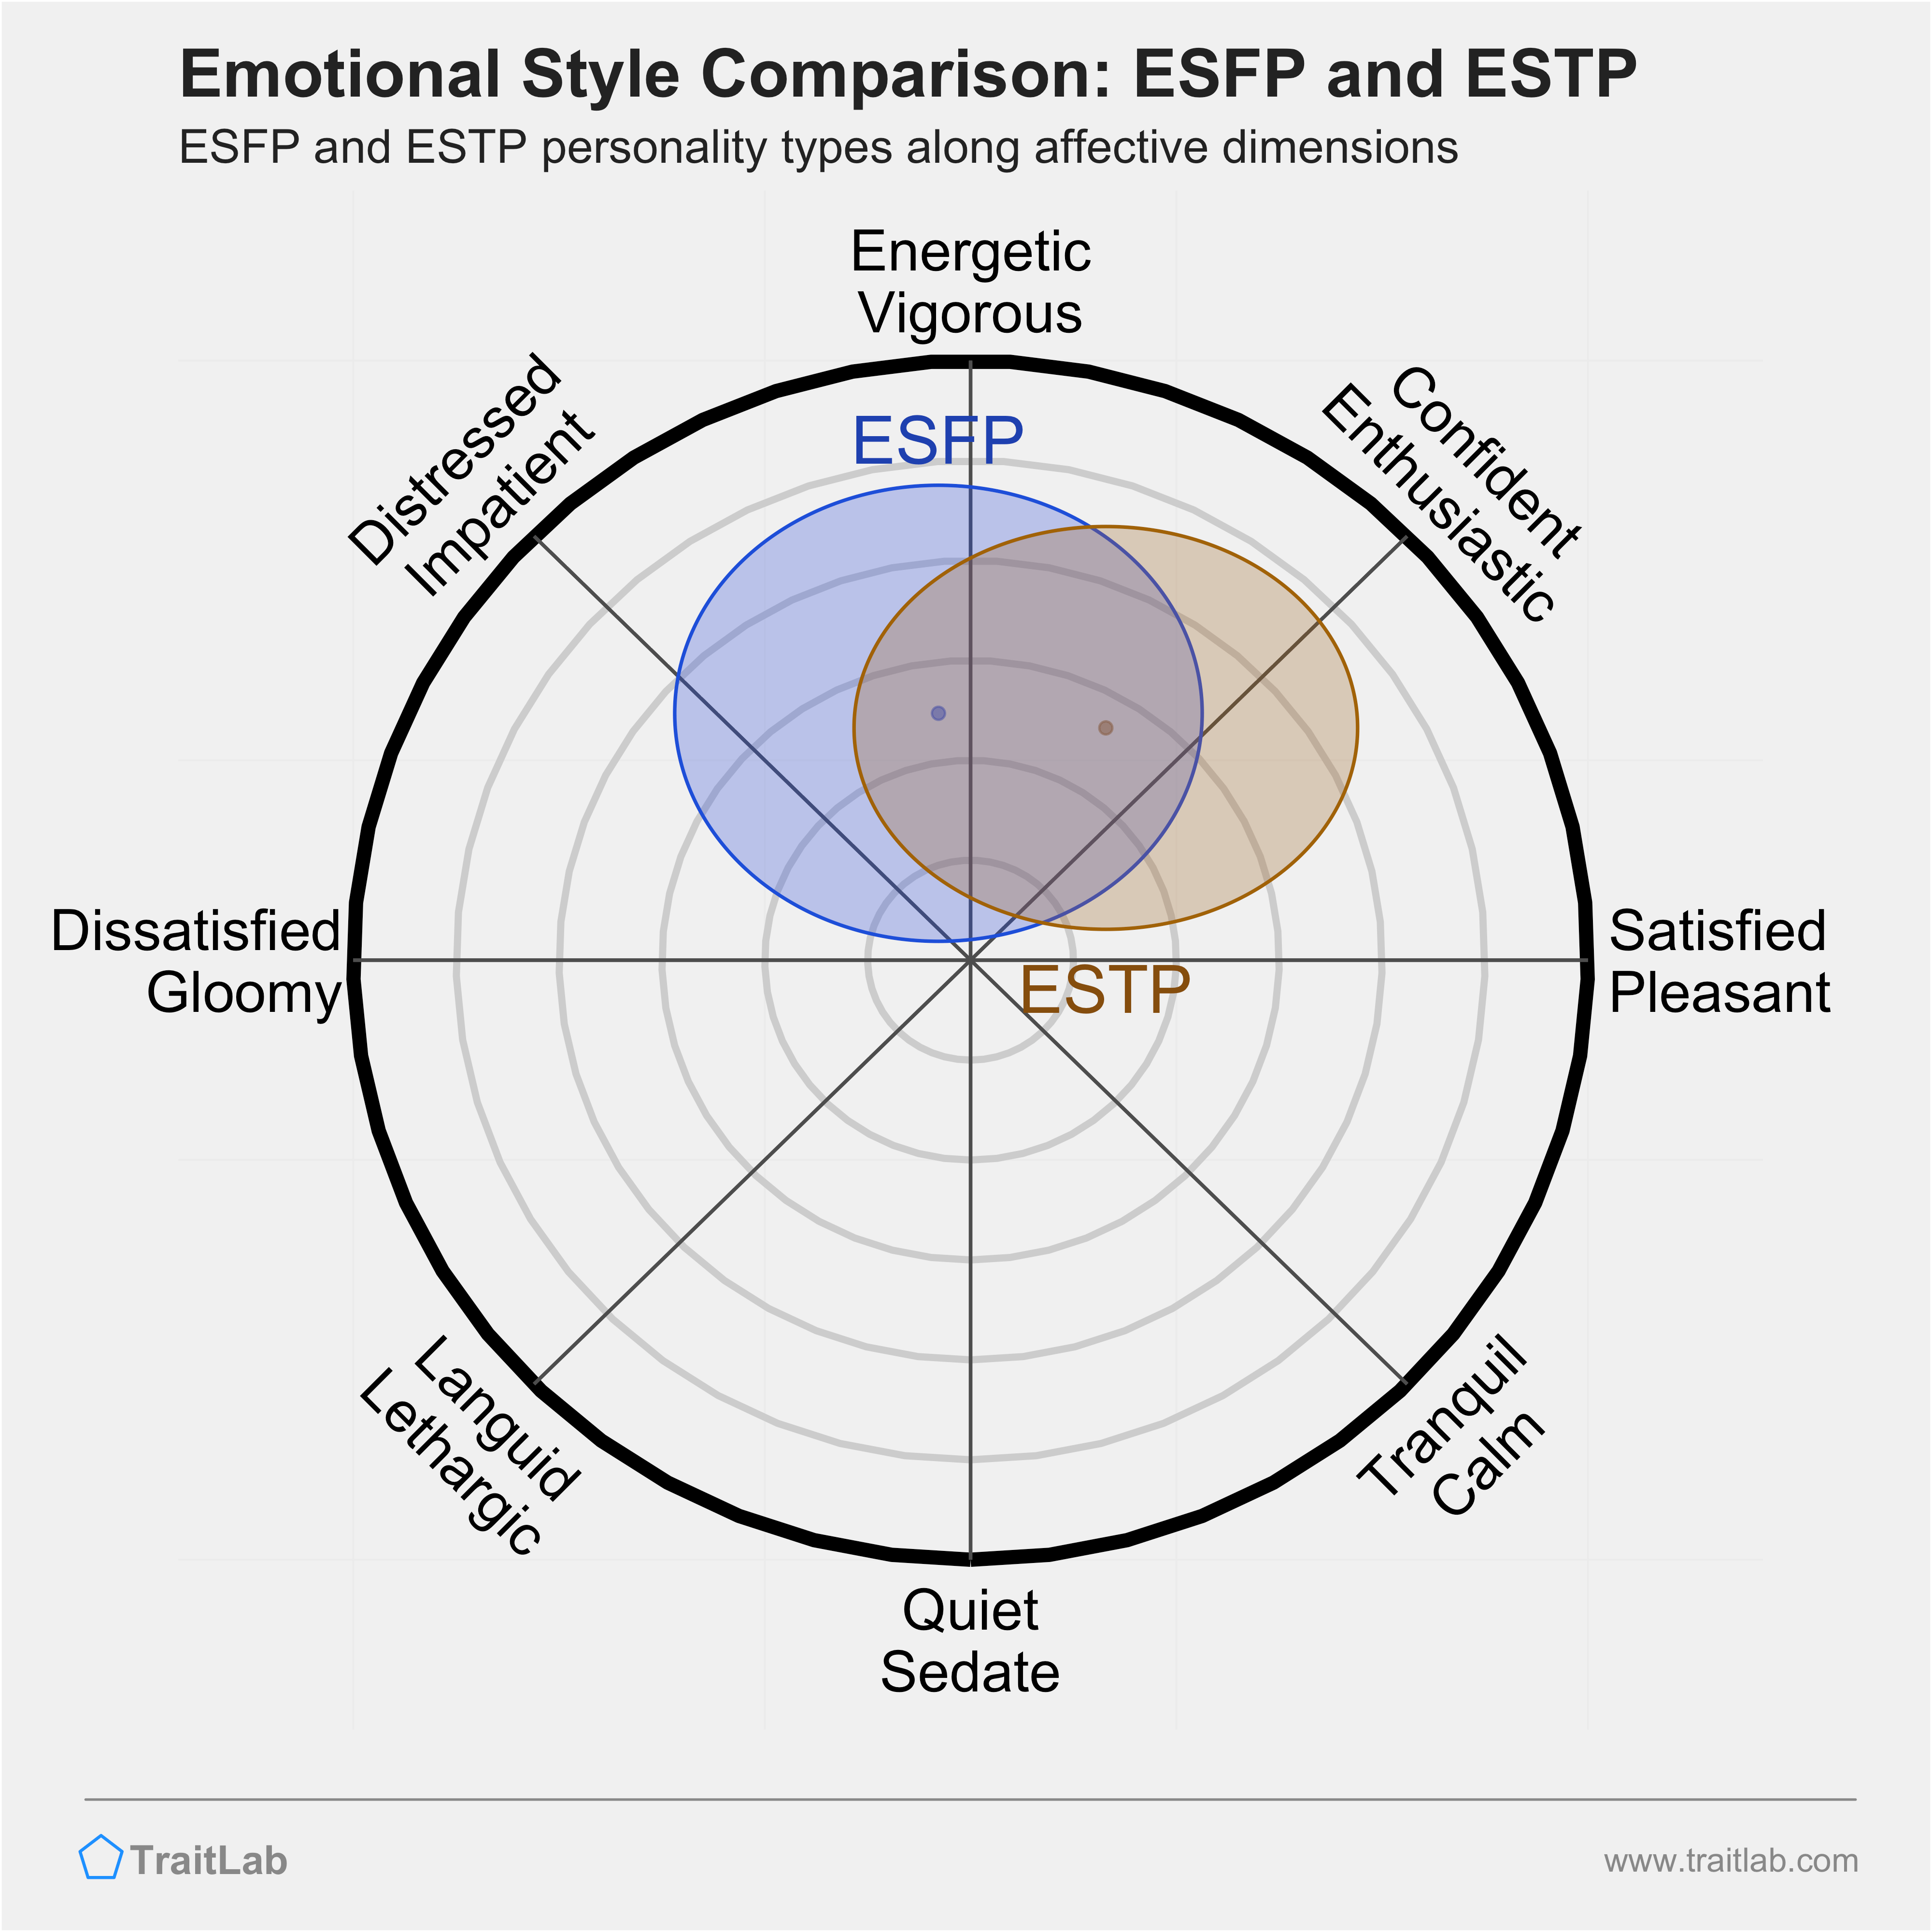 ESFP and ESTP comparison across emotional (affective) dimensions